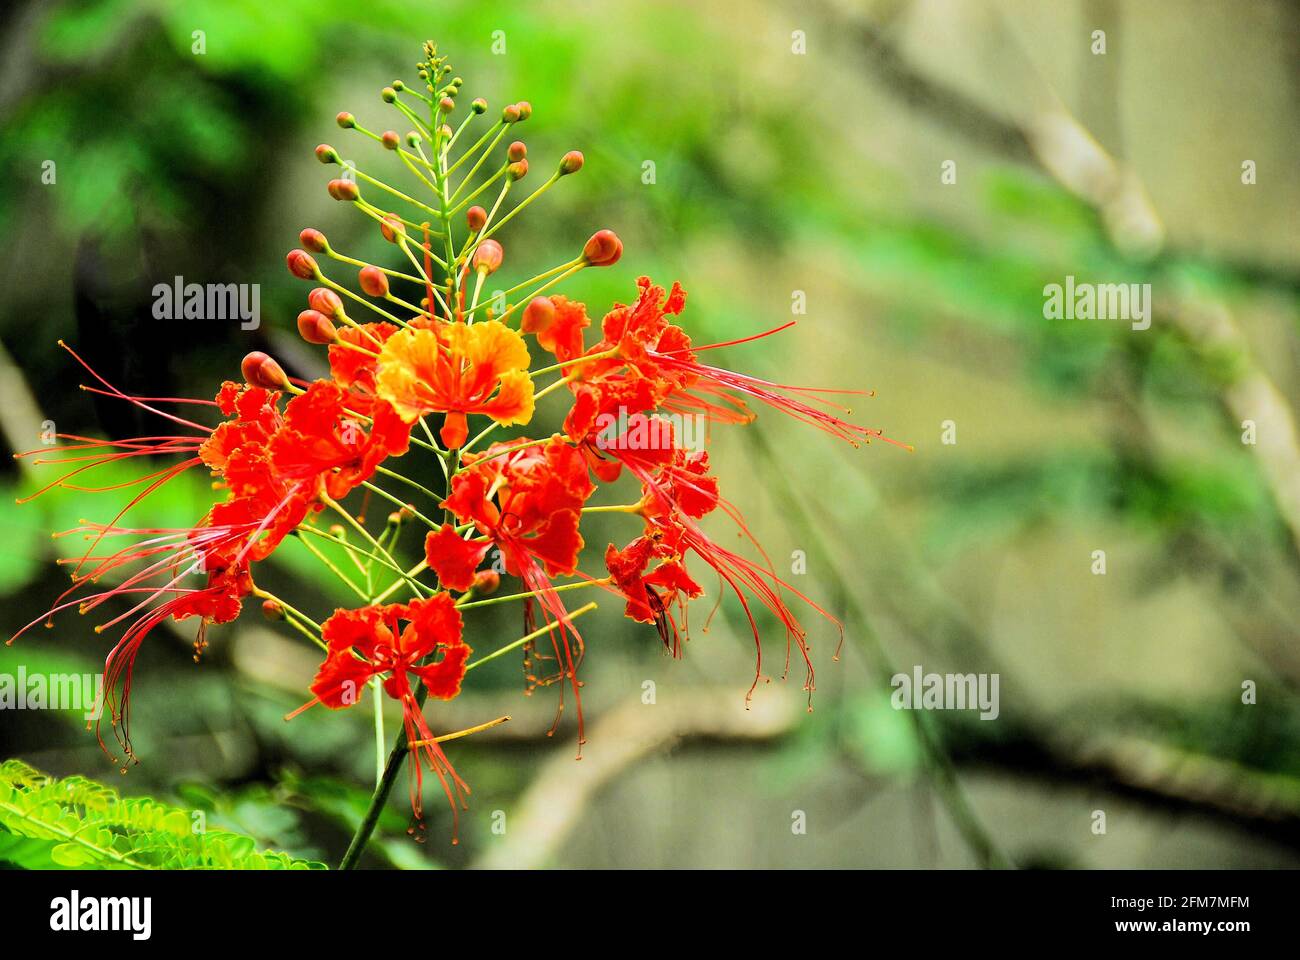 Die exotischen orange und gelben Blüten der tropischen Pfauenblume mit Grün in verschwommenem Hintergrund. Stockfoto